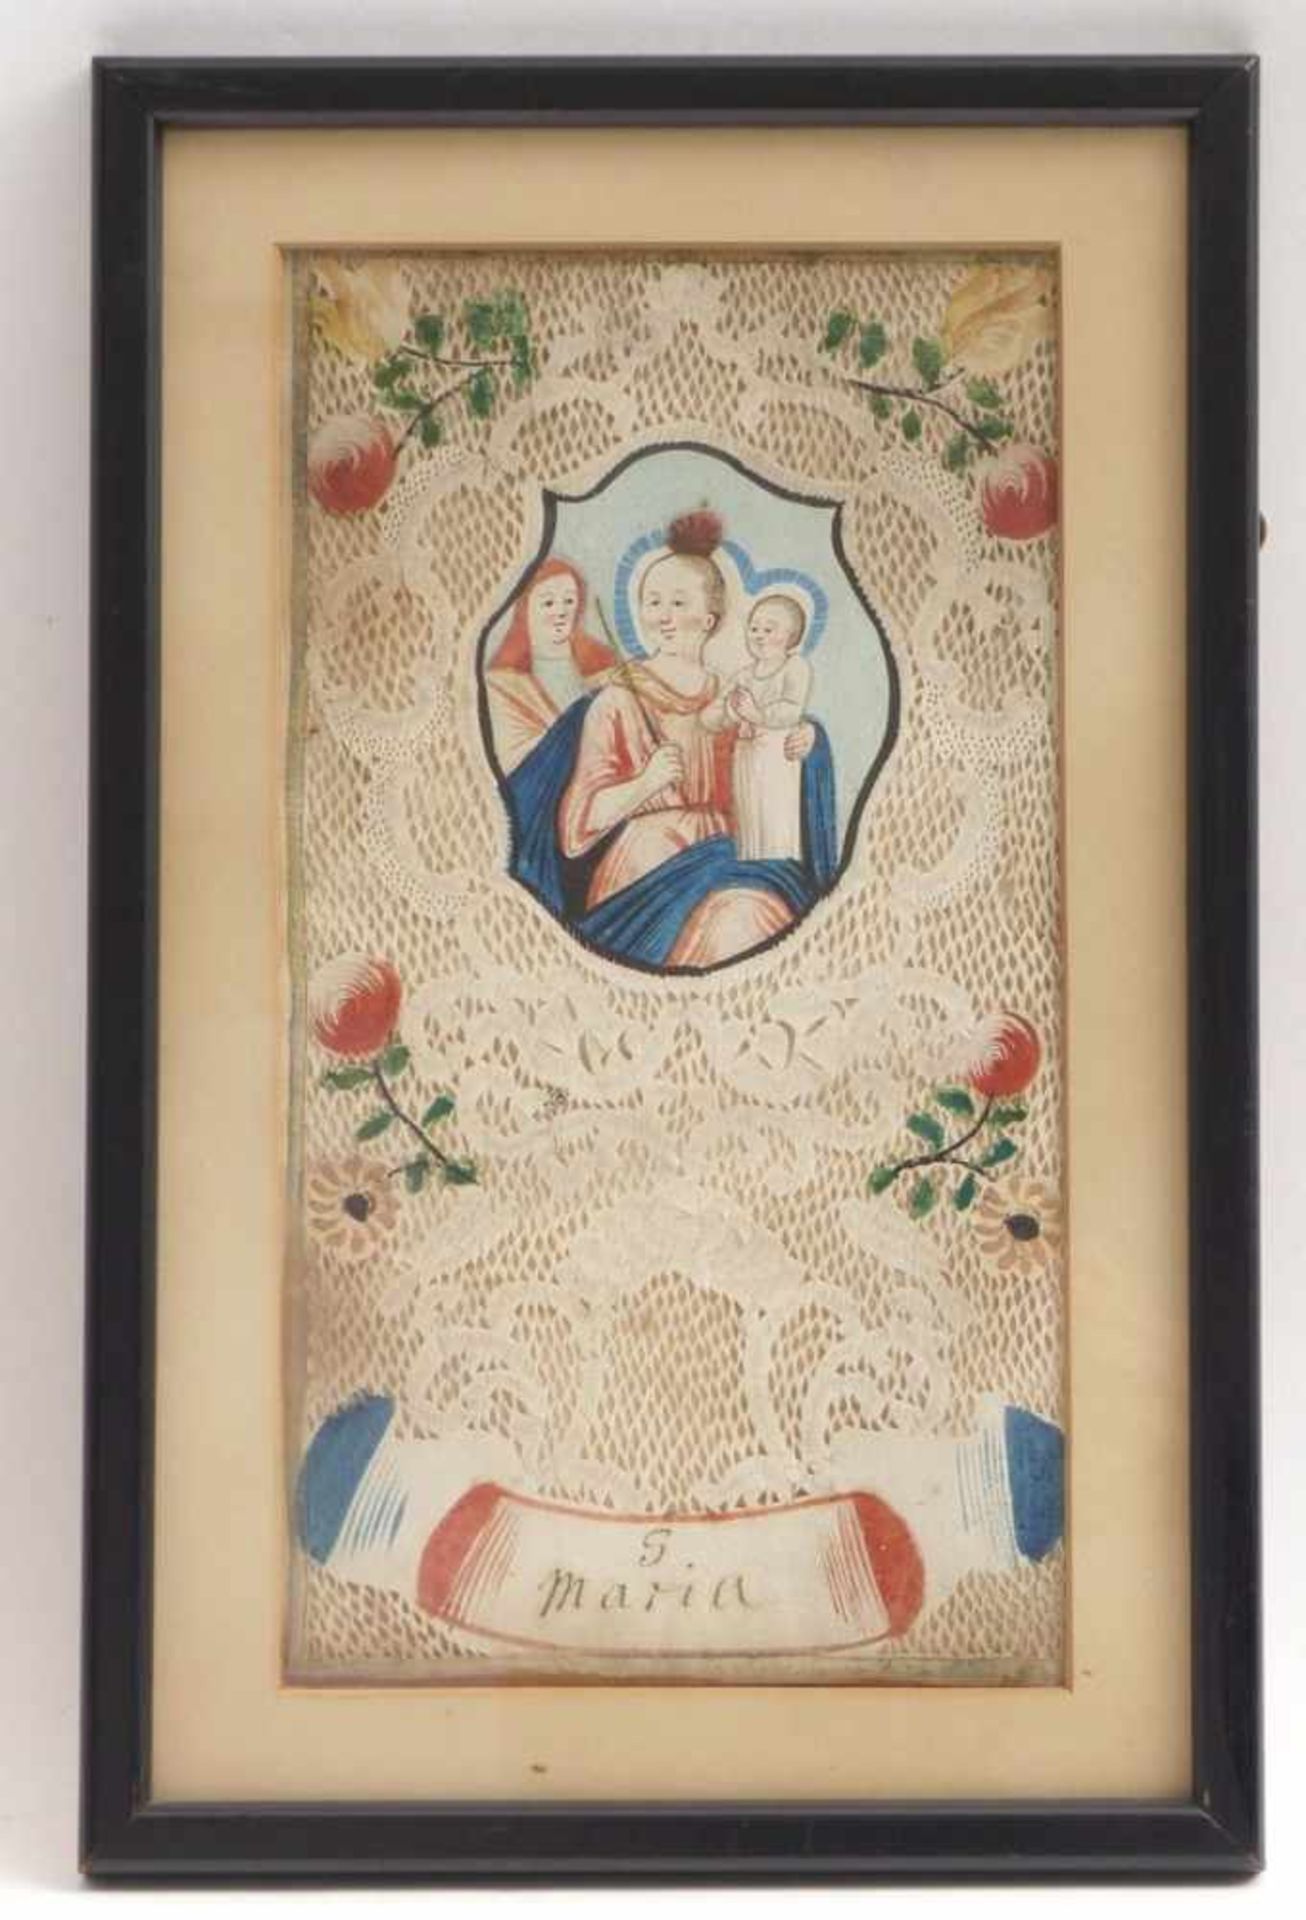 Großes SpitzenbildUm 1800Im Hochrechteck Kartusche mit Darstellung der bekrönten Madonna mit Kind, - Image 2 of 3